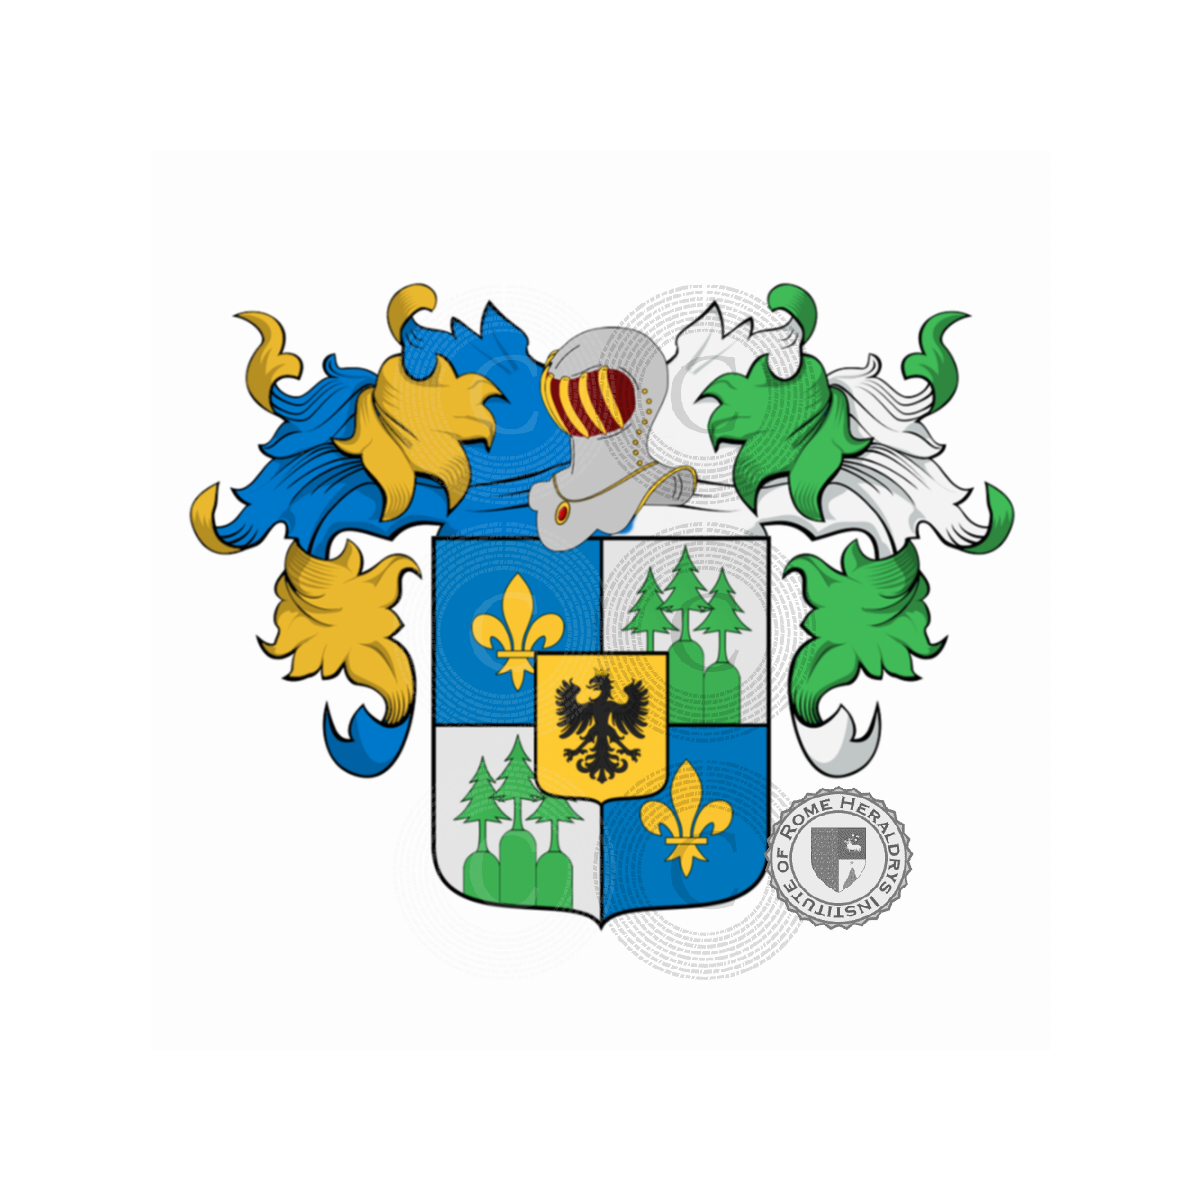 Coat of arms of familyZanetti, de Zanetti,Zanelli,Zanet,Zanetto,Zuanetti